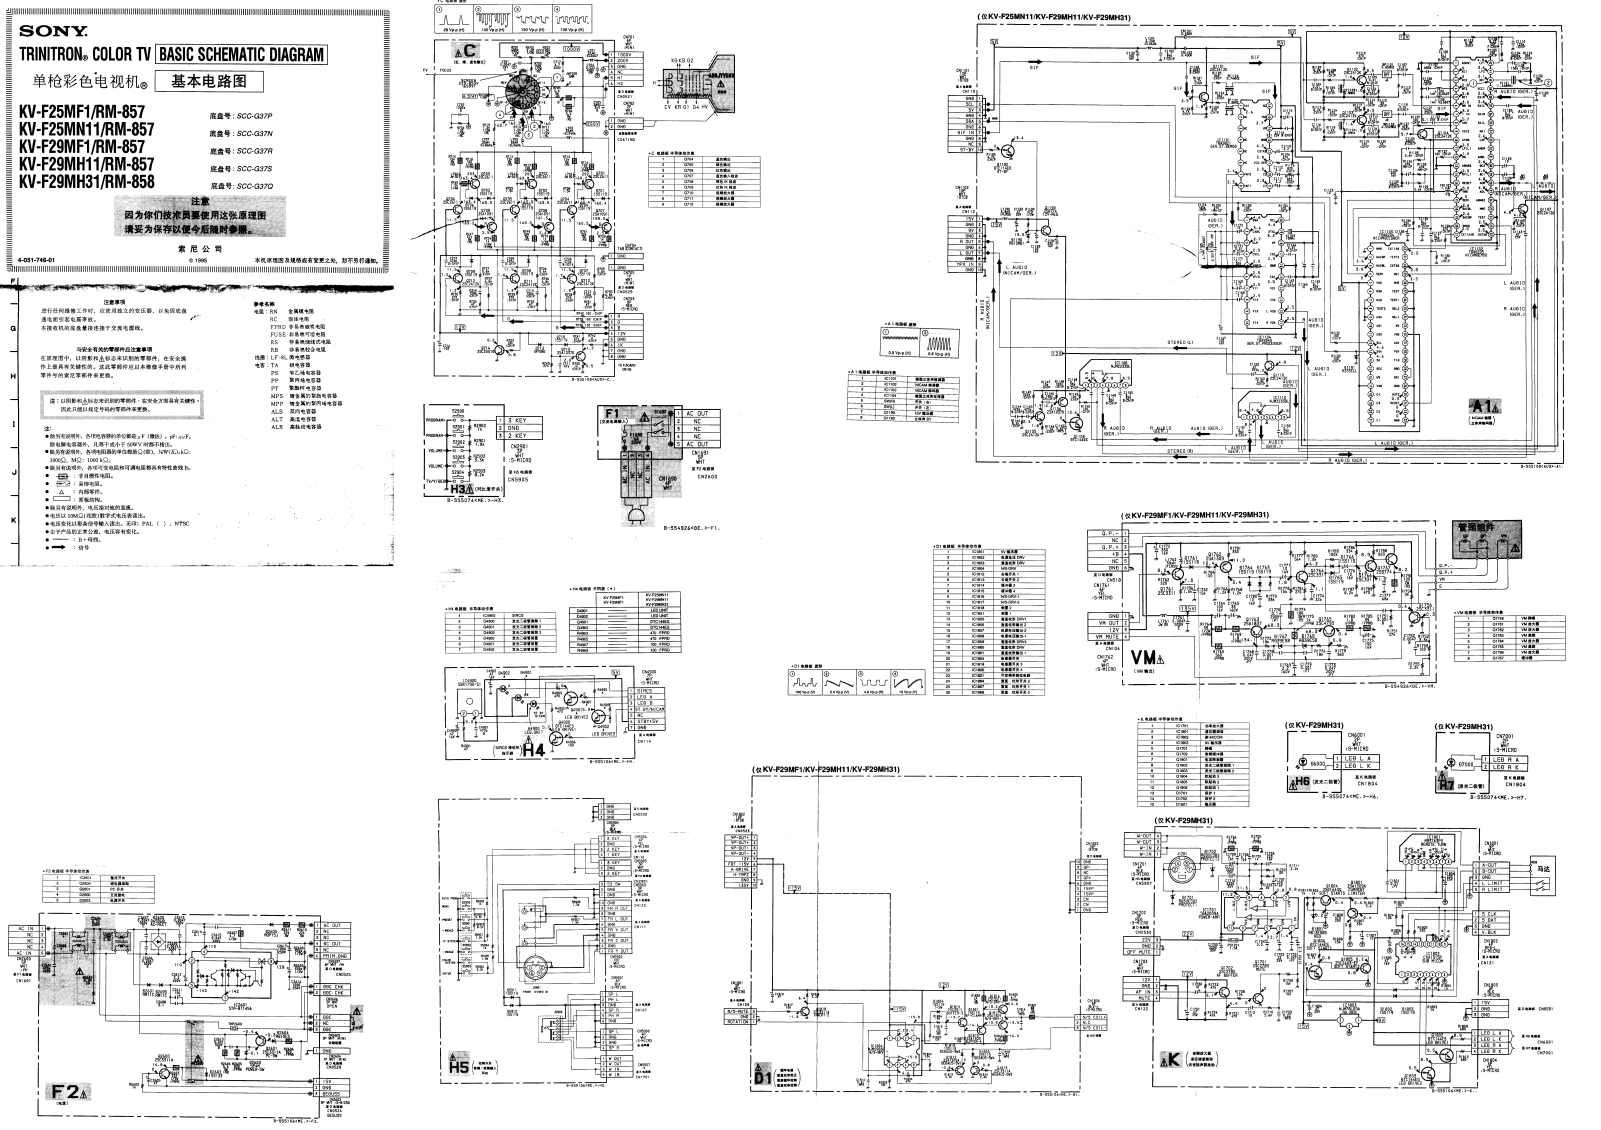 Sony KV-F25MF1, KV-F25MN11, KV-F29MF1, KV-F29MH11, KV-F29MH31 Schematic